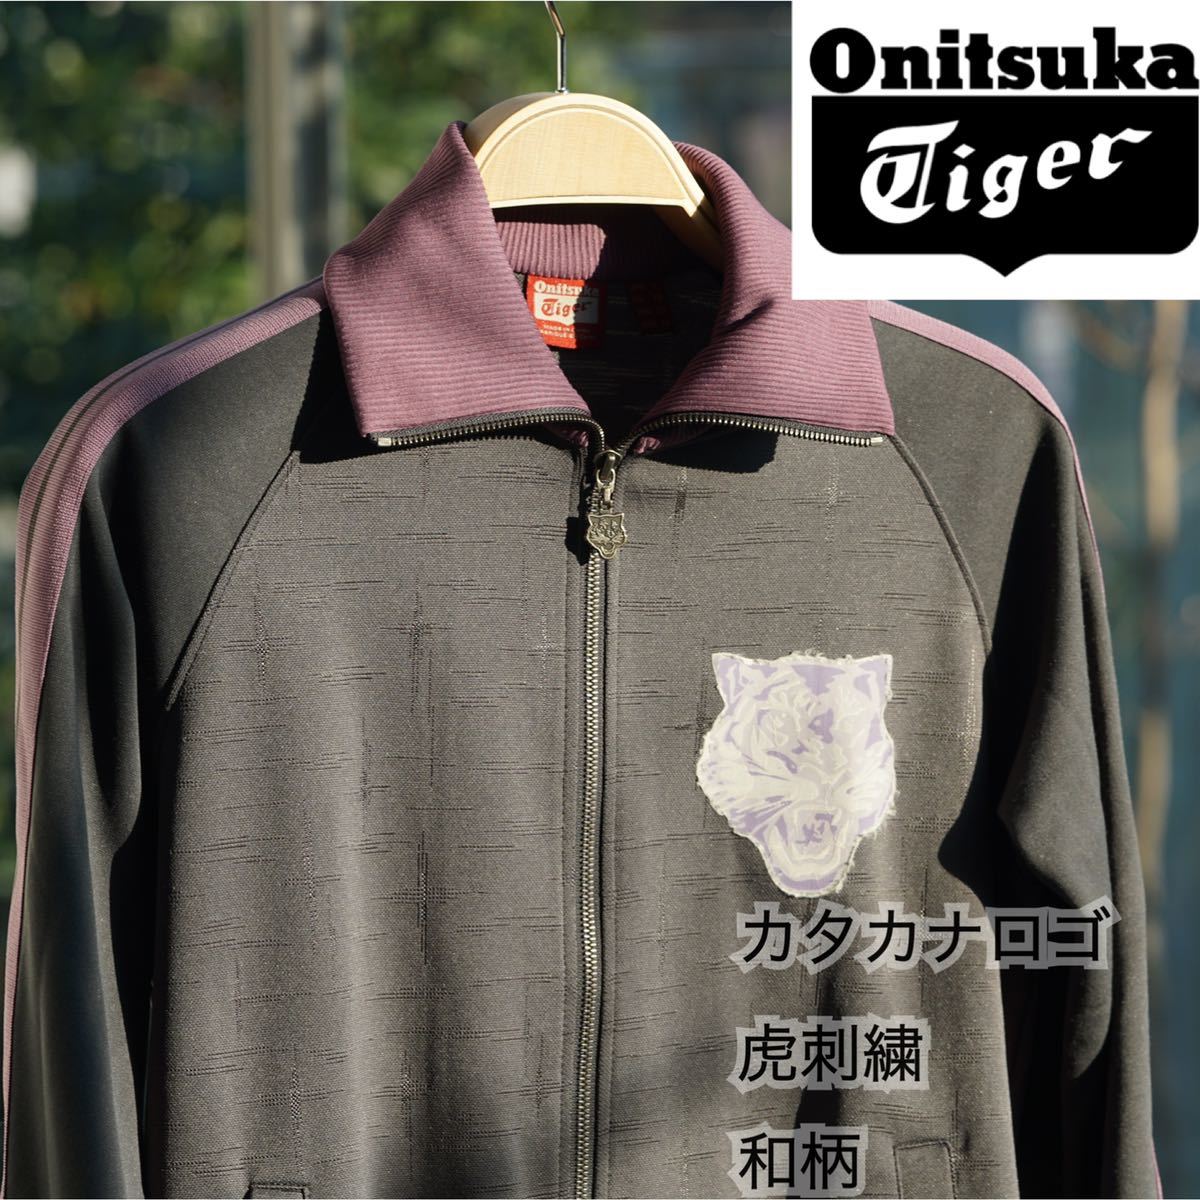 2340円 総合福袋 Onitsuka Tiger オニツカタイガー トラックジャケット